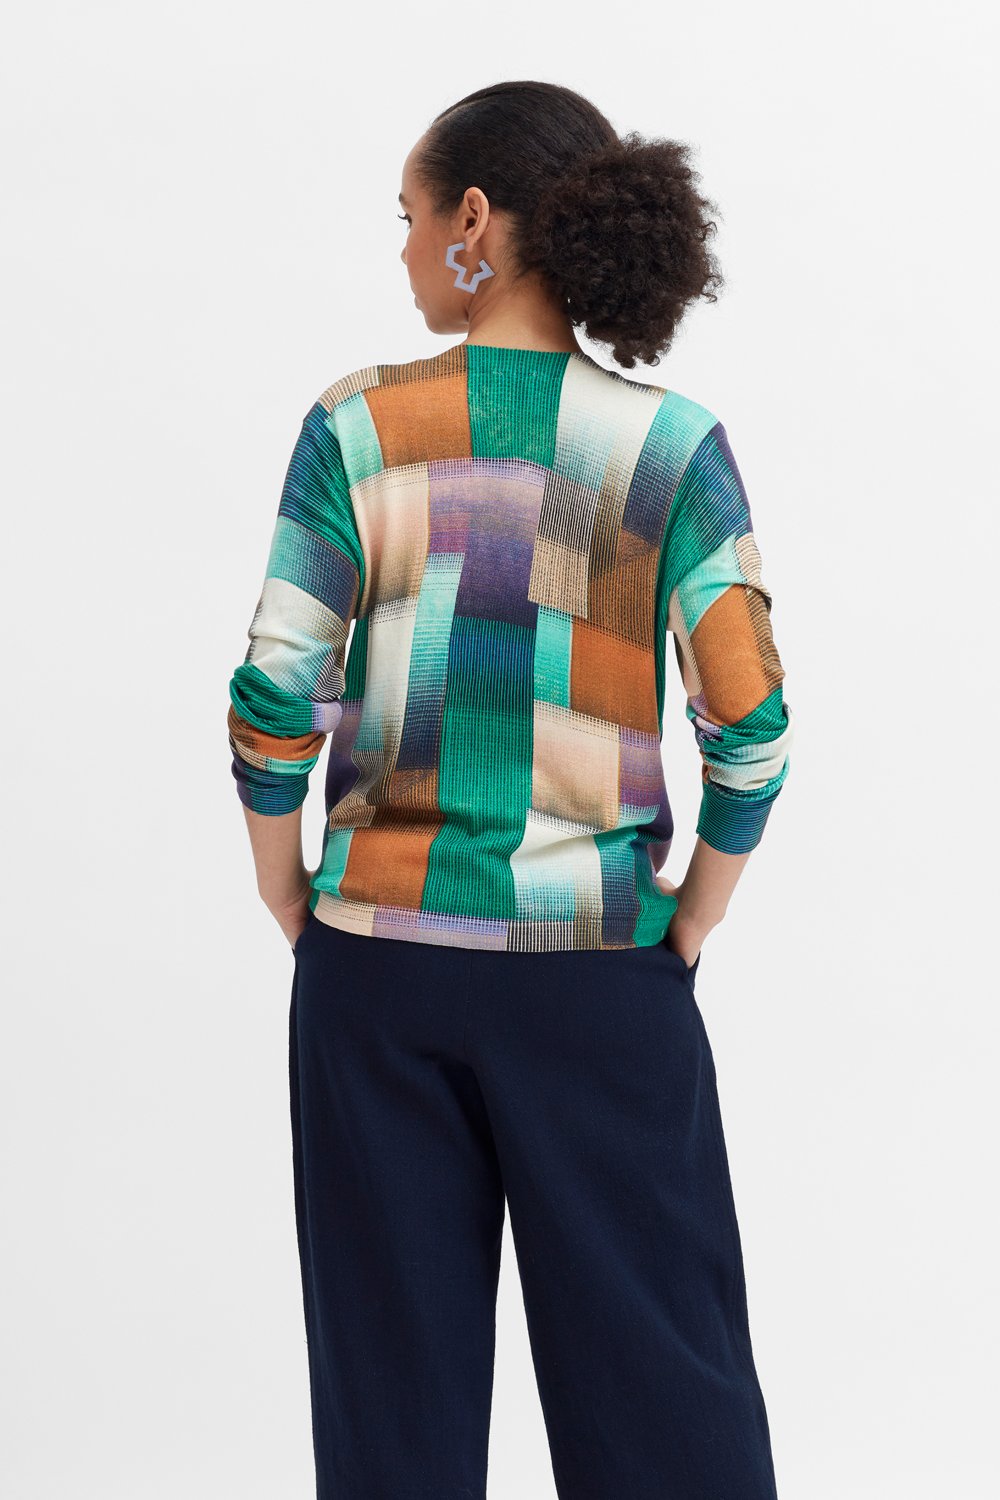 elk-odense-knit-sweater 3